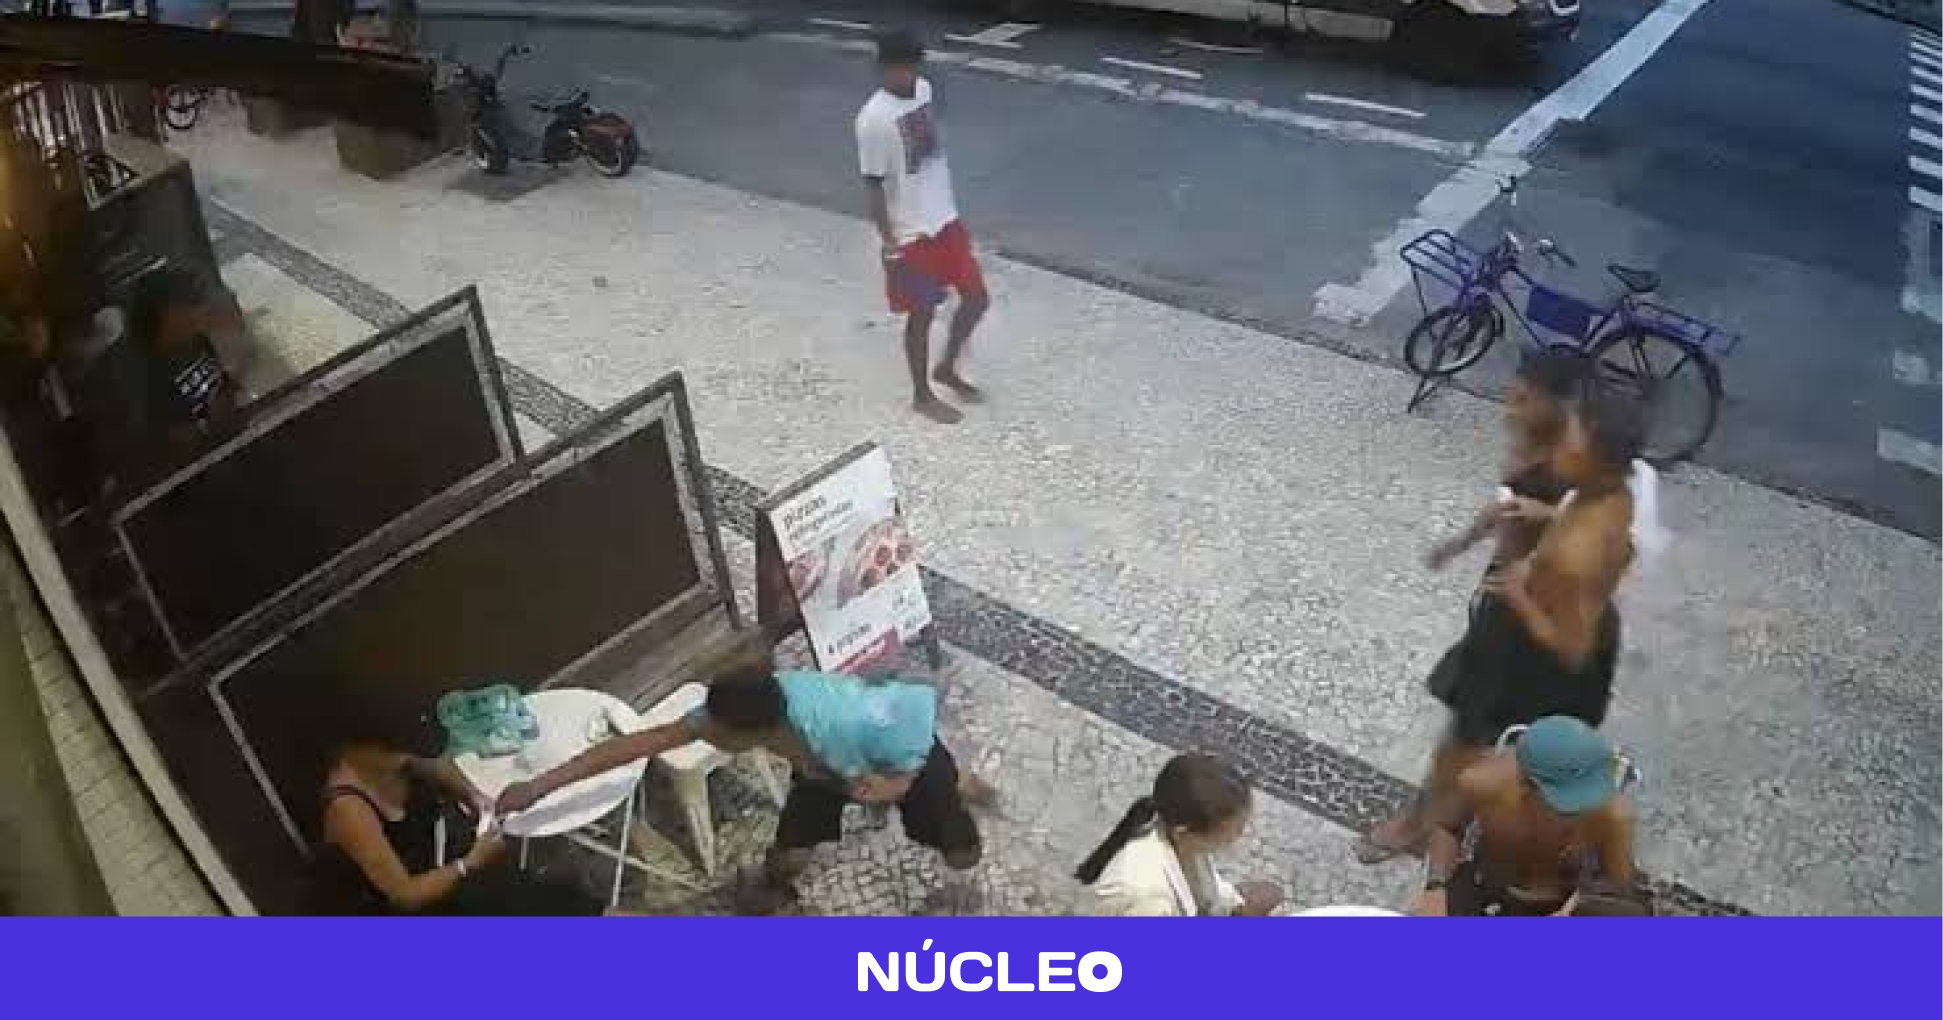 Assaltos em Copacabana geram caos nas redes